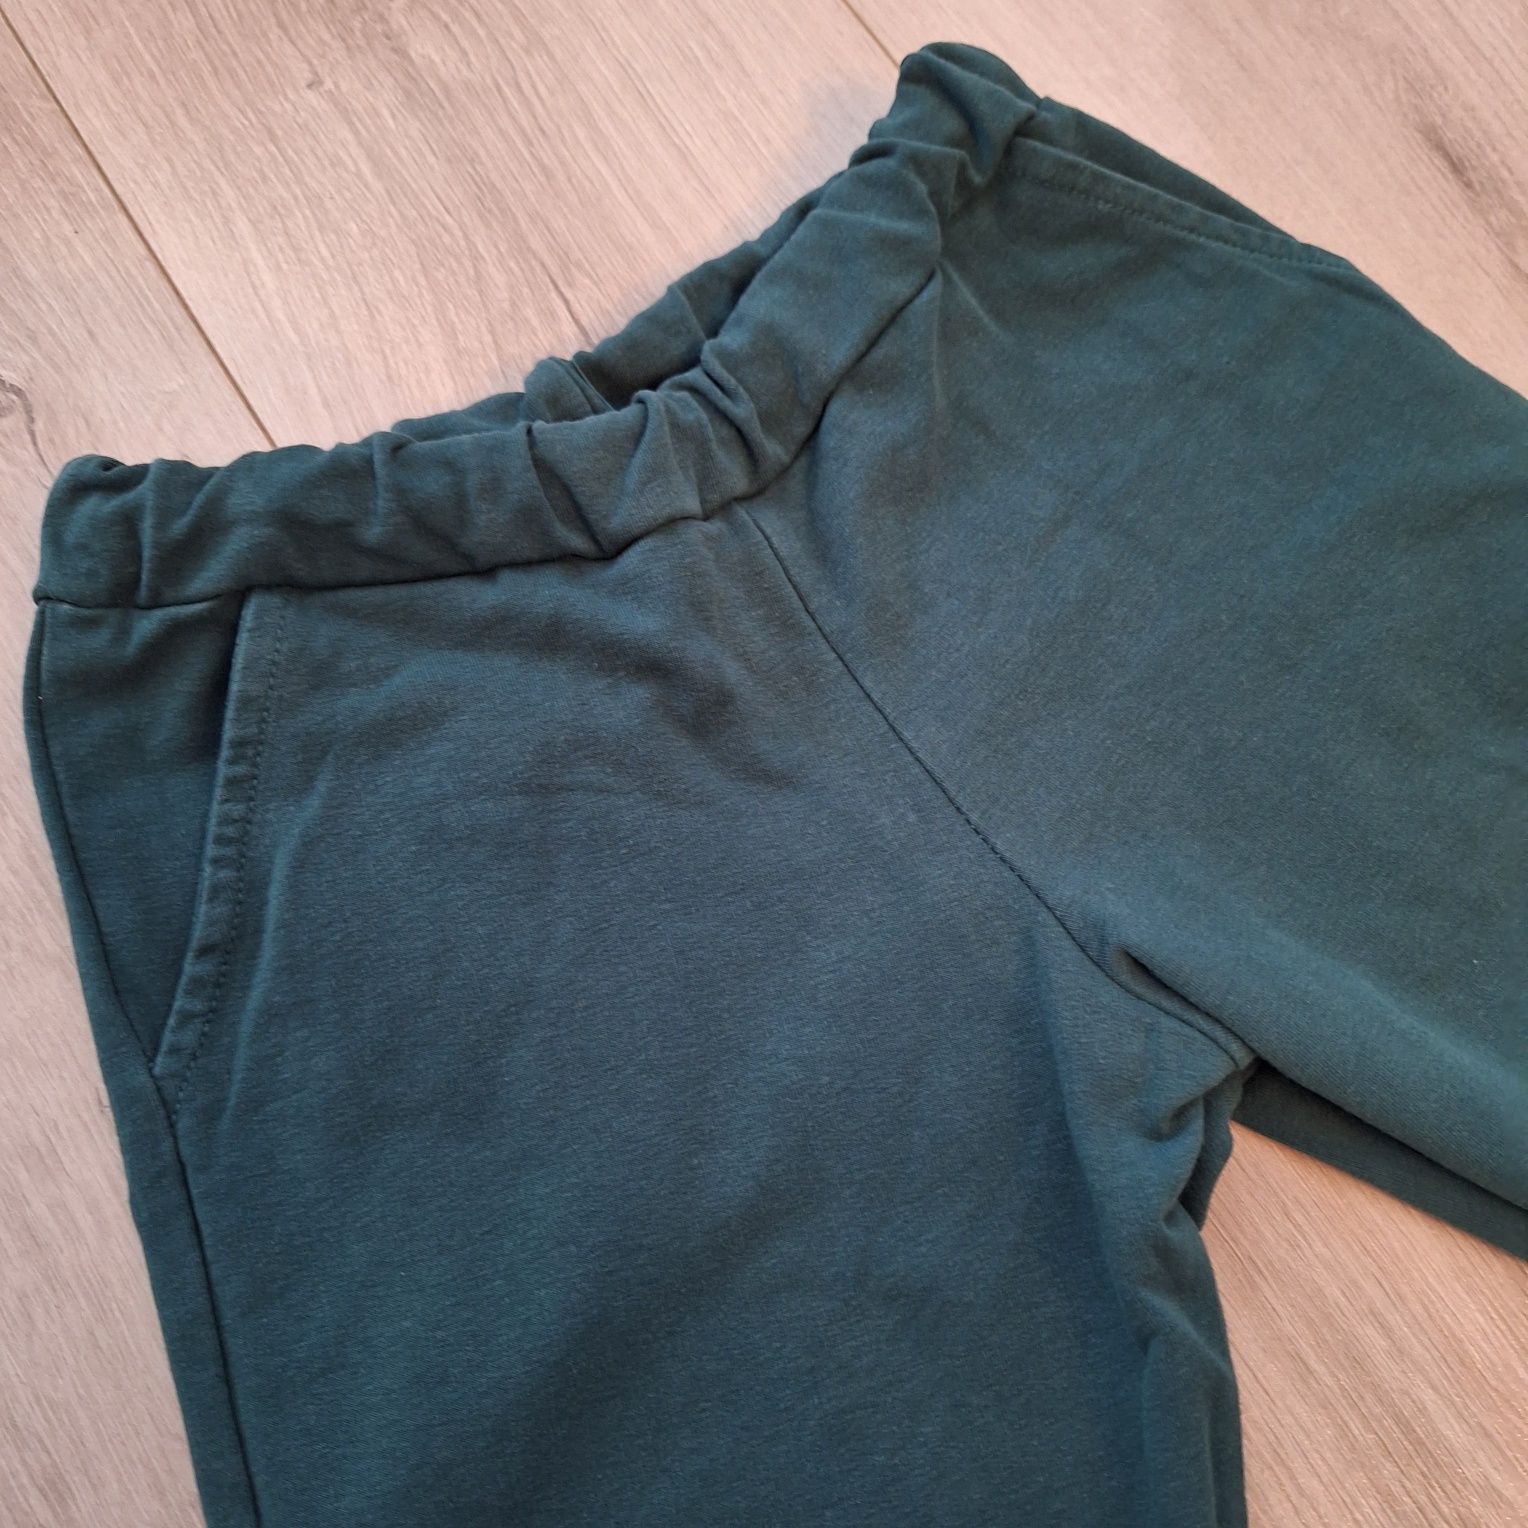 Zielone spodnie dresowe Mikoo rozm. 128/134